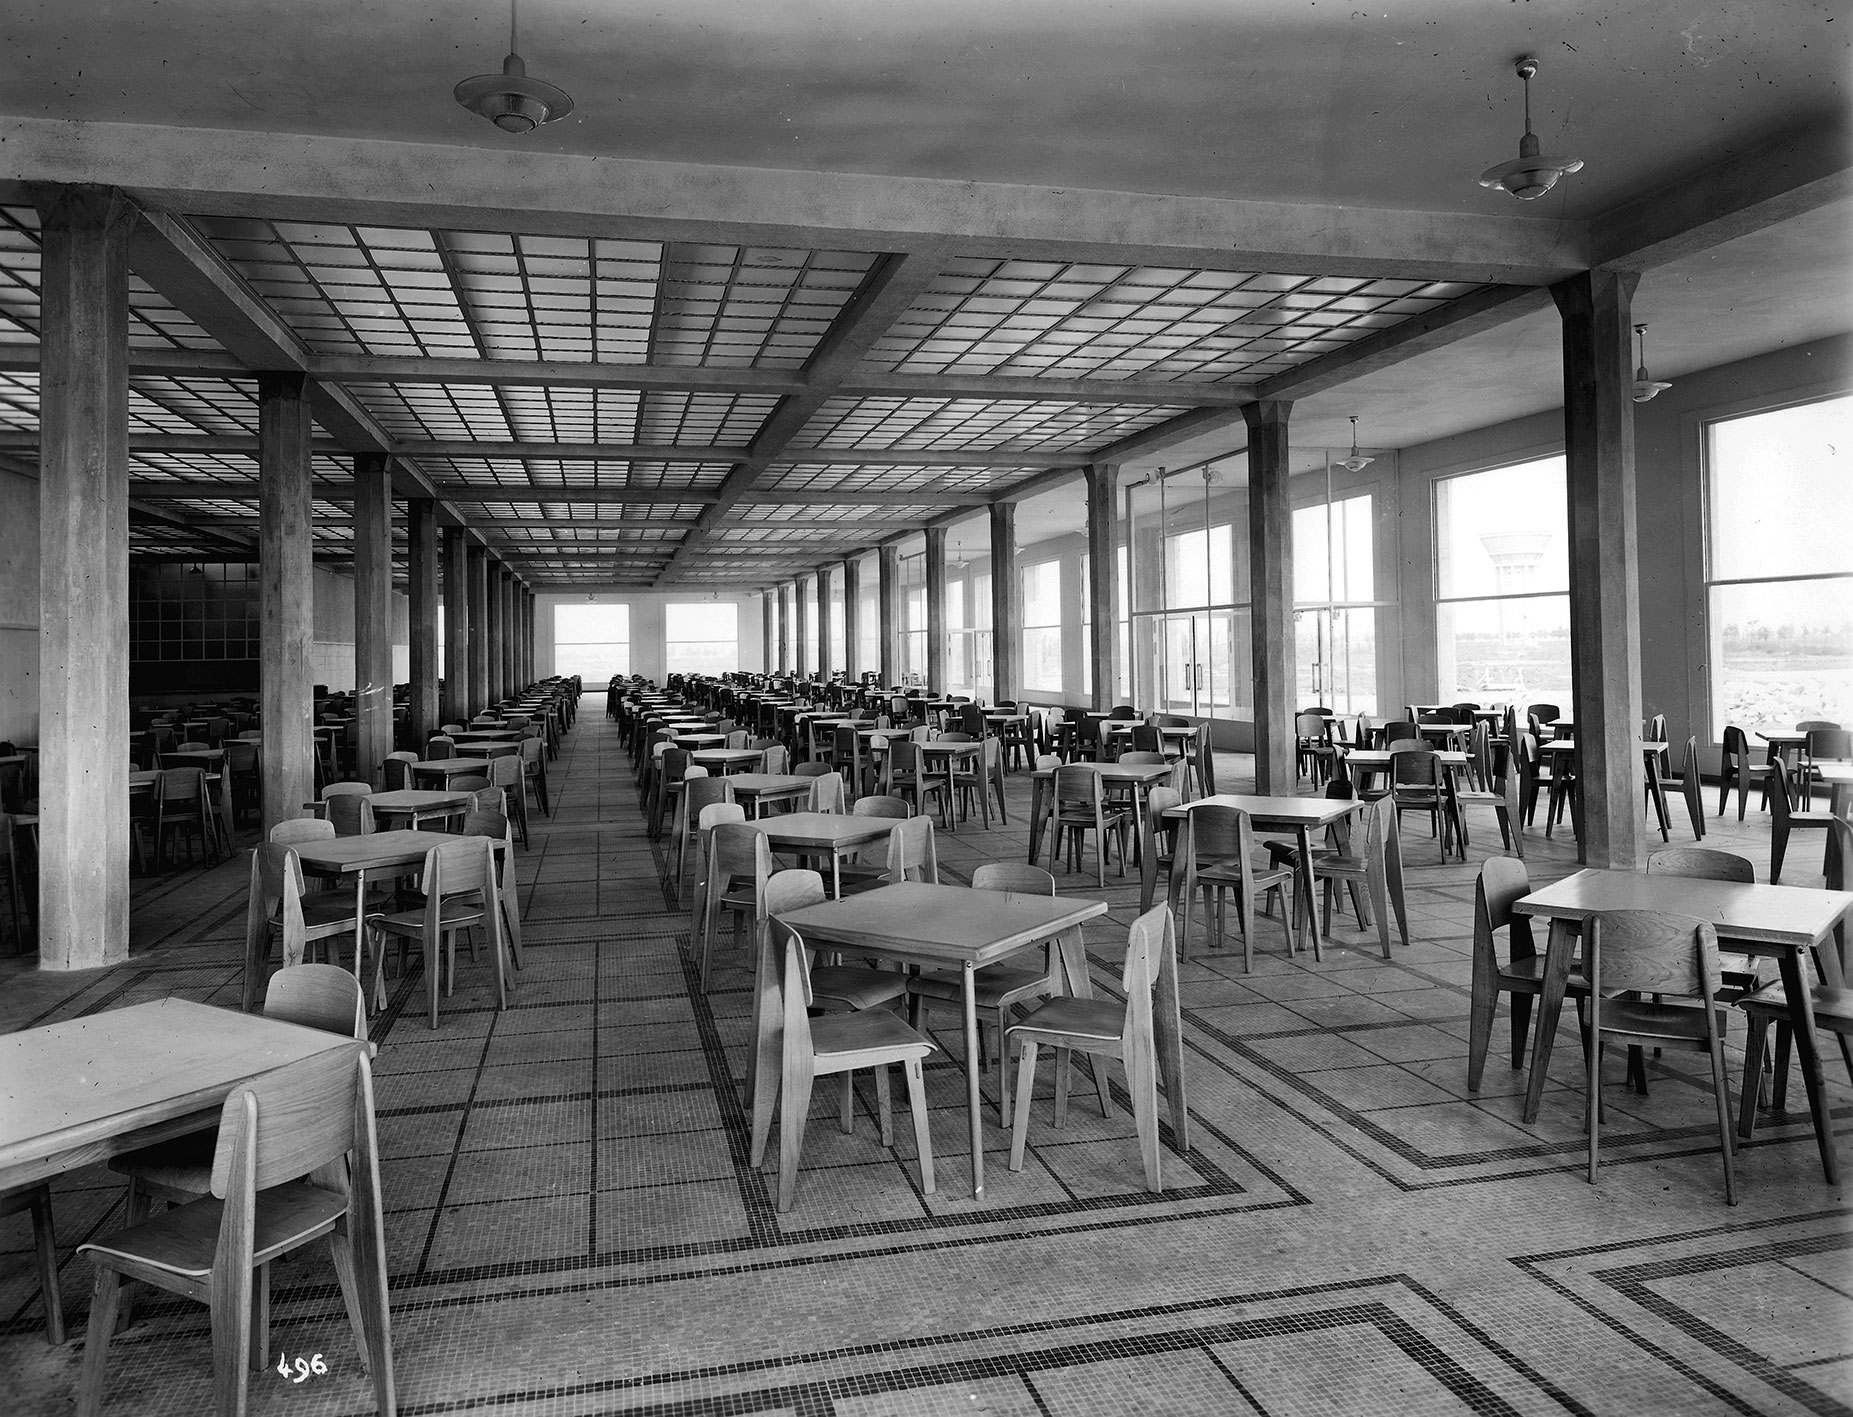 Centre d’études nucléaires du Commissariat à l’énergie atomique, Saclay (A. et G. Perret, arch., 1948-1953). Le réfectoire équipé avec un ensemble de chaises Tout Bois.